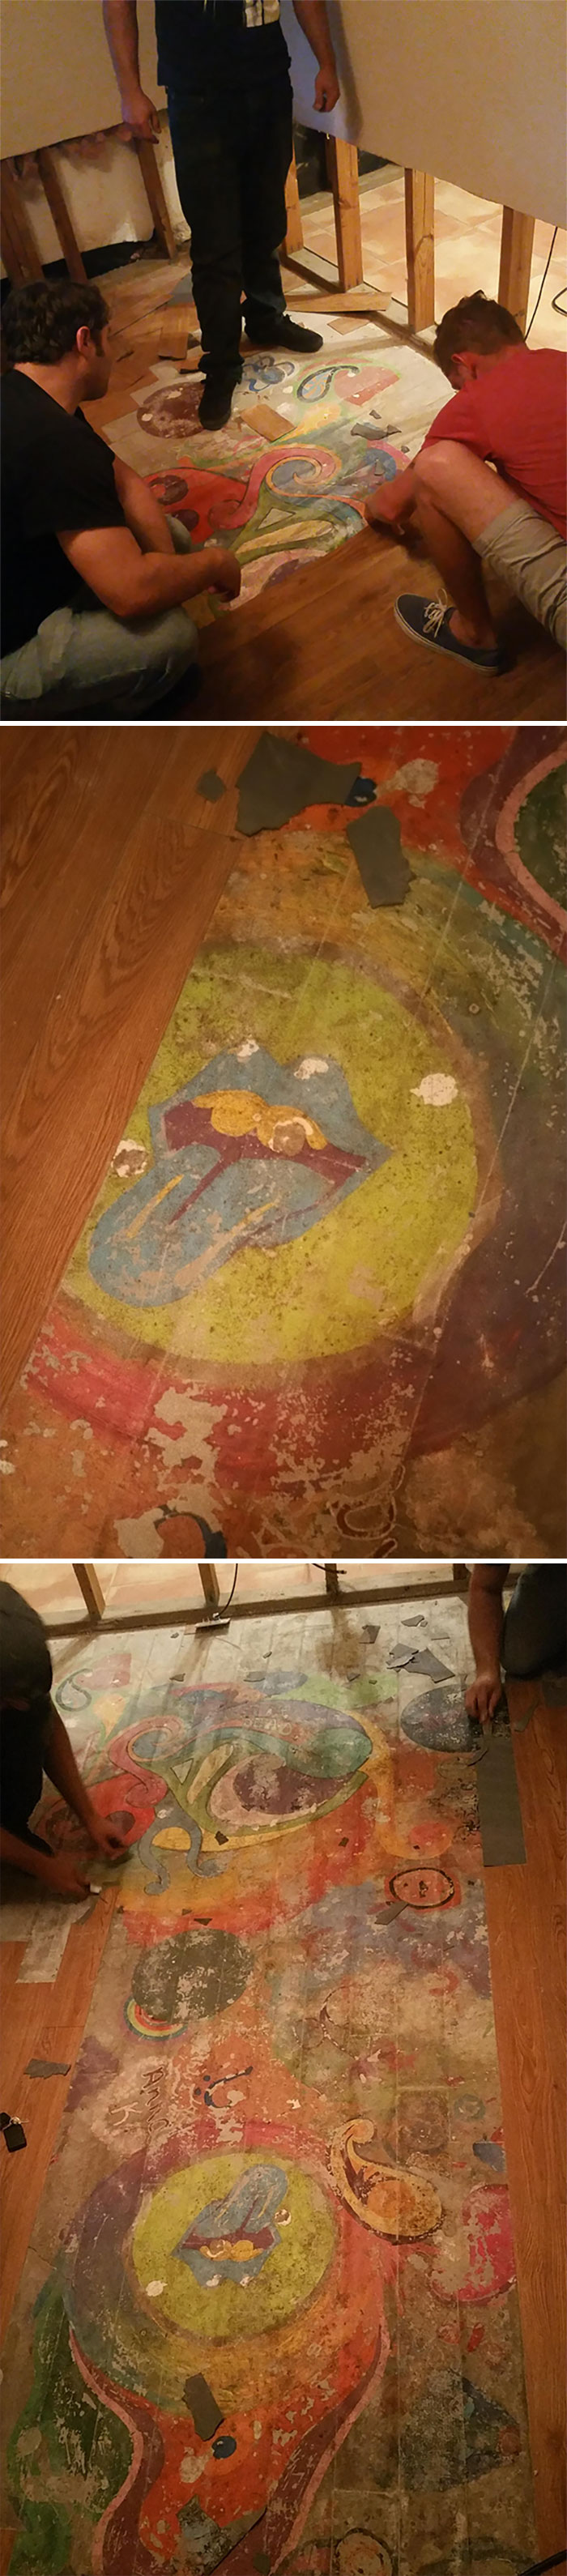 Lost Hippie Mural Found Under My Flooded House